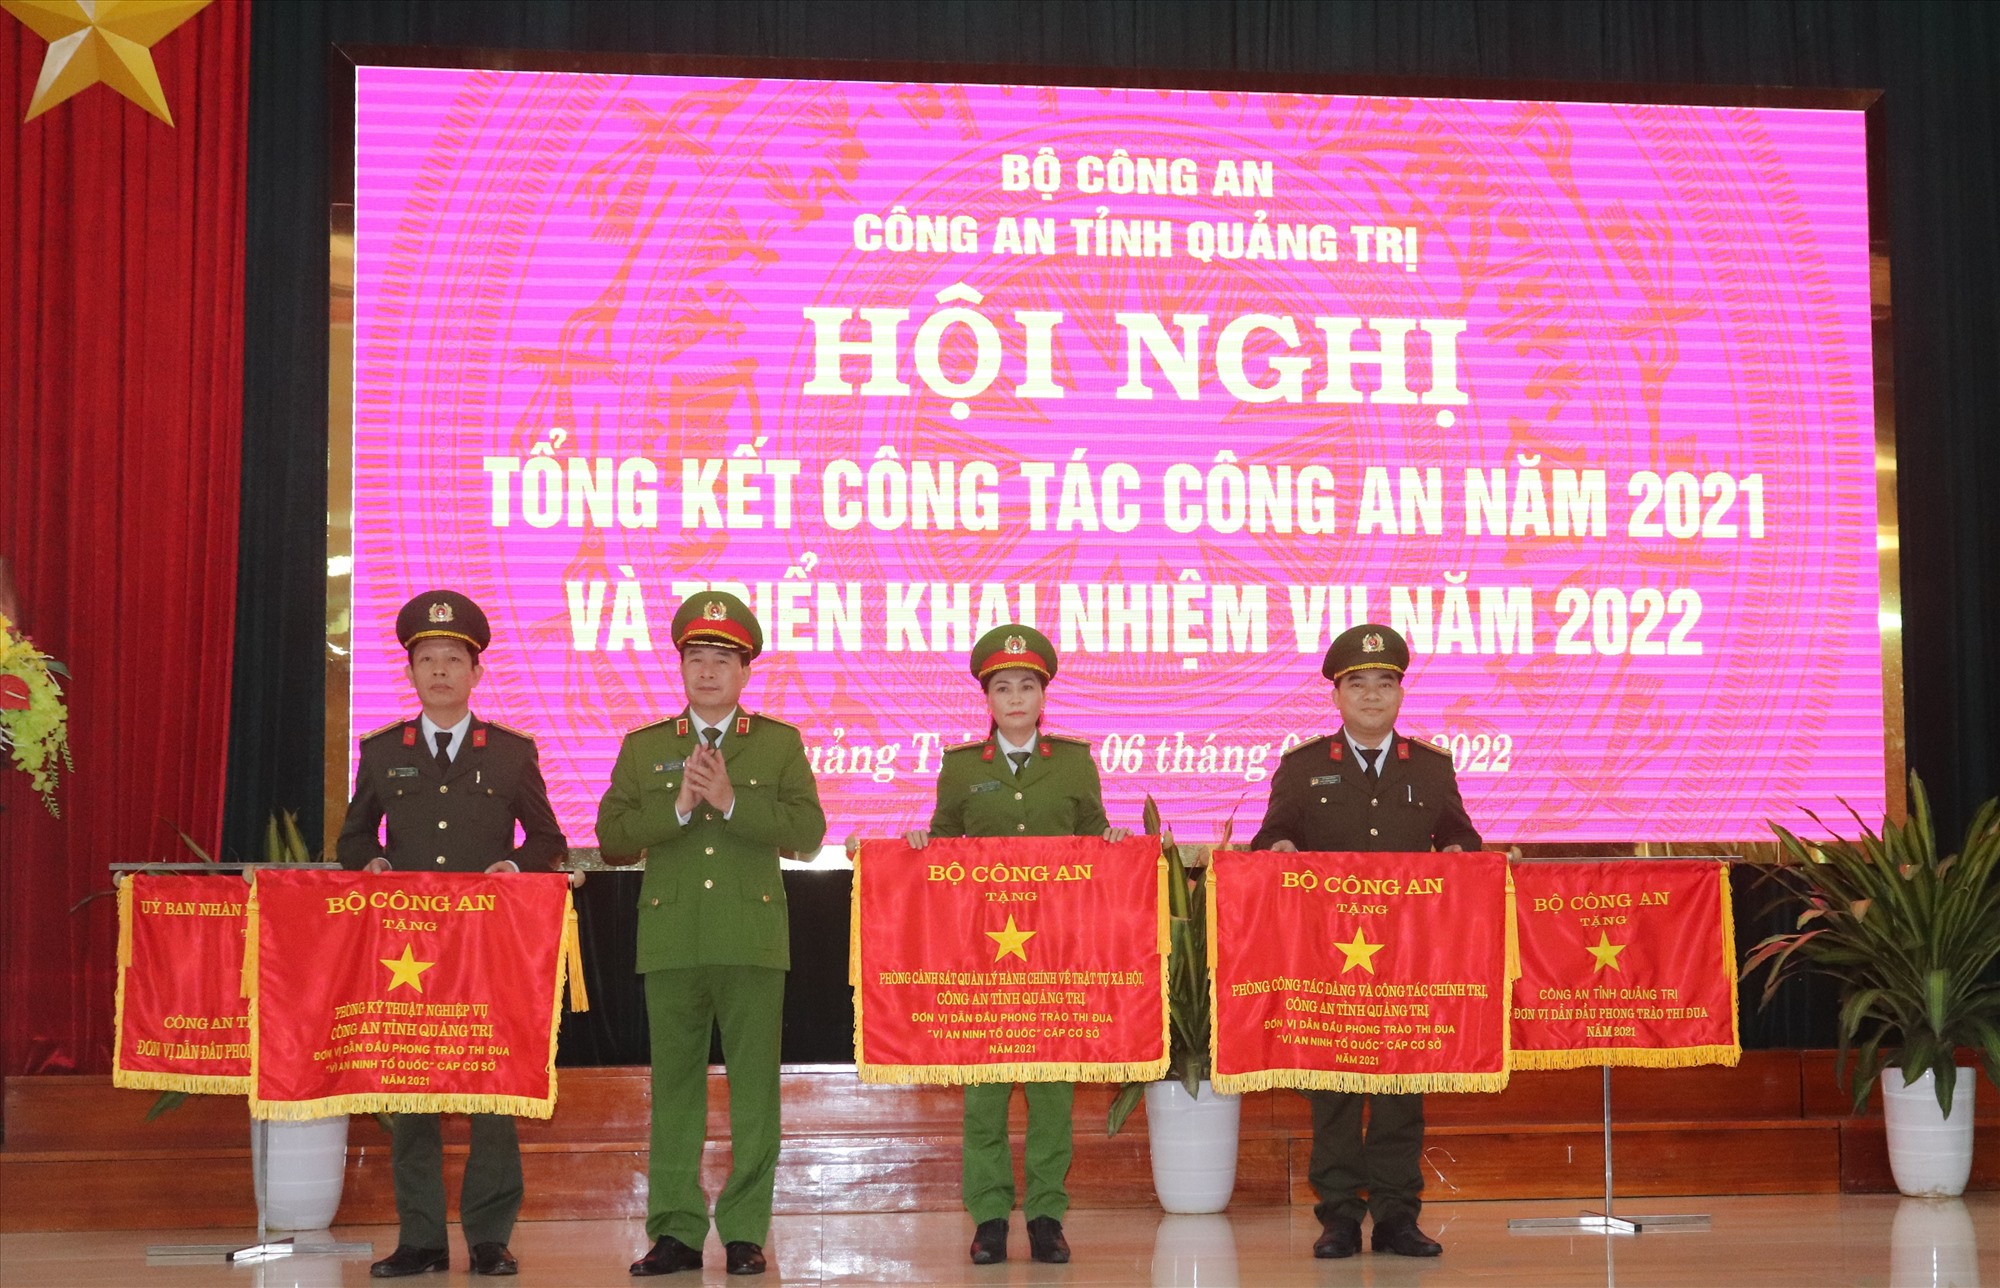 Thứ trưởng Bộ Công an, Thiếu tướng Lê Quốc Hùng trao Cờ thi đua của Bộ Công an cho 3 tập thể thuộc Công an tỉnh vì đã có thành tích xuất sắc, dẫn đầu phong trào thi đua “Vì an ninh Tổ quốc” đơn vị cấp cơ sở năm 2021 - Ảnh: T.P